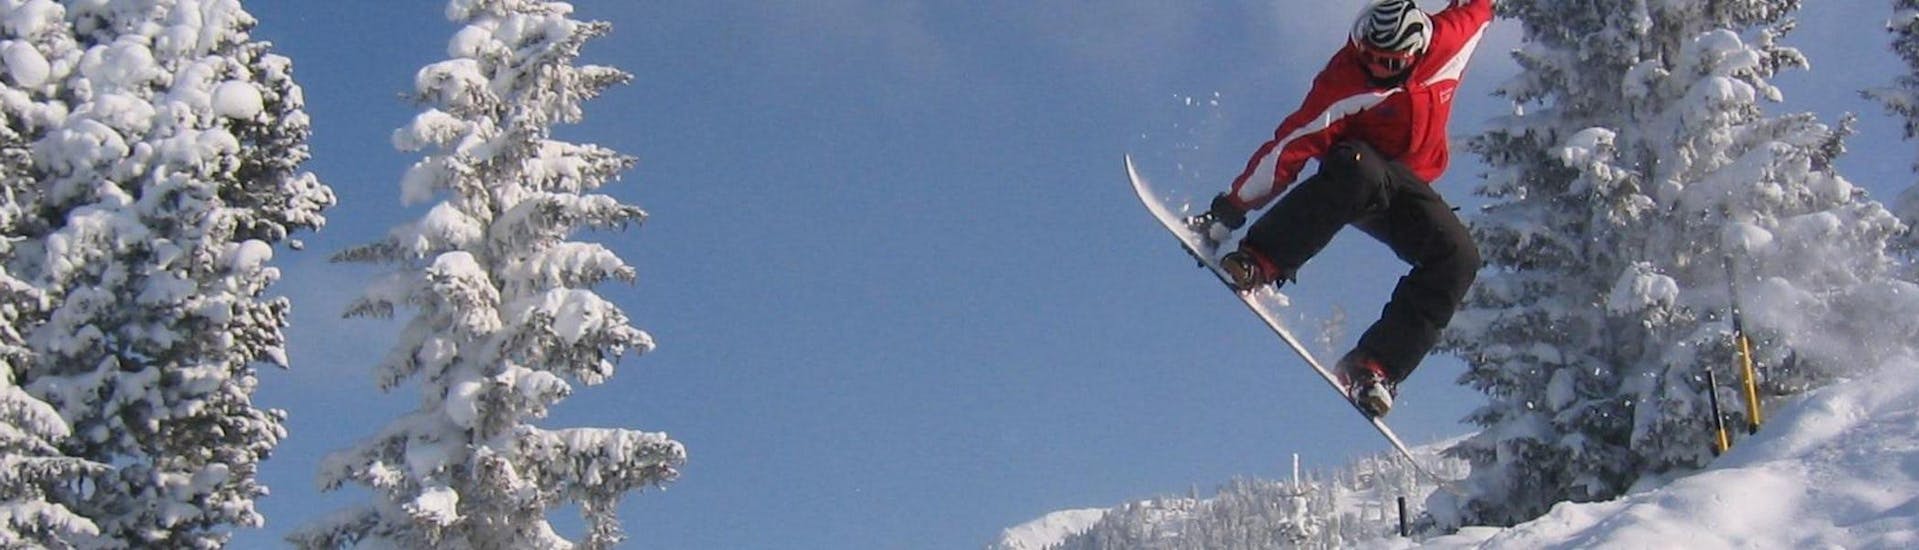 Lezioni di Snowboard a partire da 15 anni con esperienza.